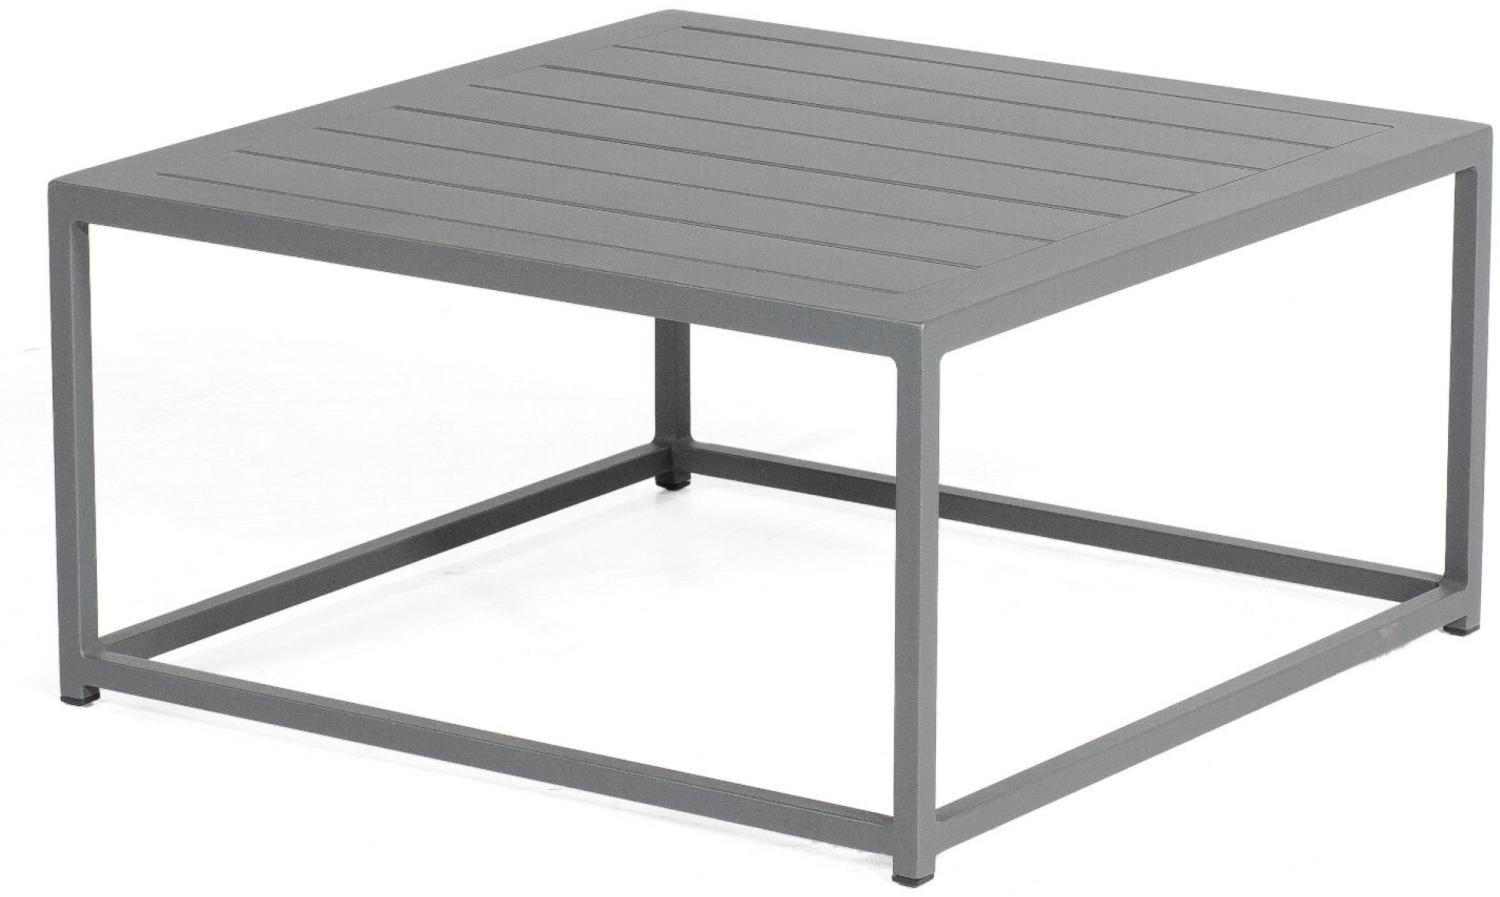 Sonnenpartner Lounge-Tisch Basic Aluminium 70x70 cm anthrazit Loungetisch Beistelltisch Bild 1